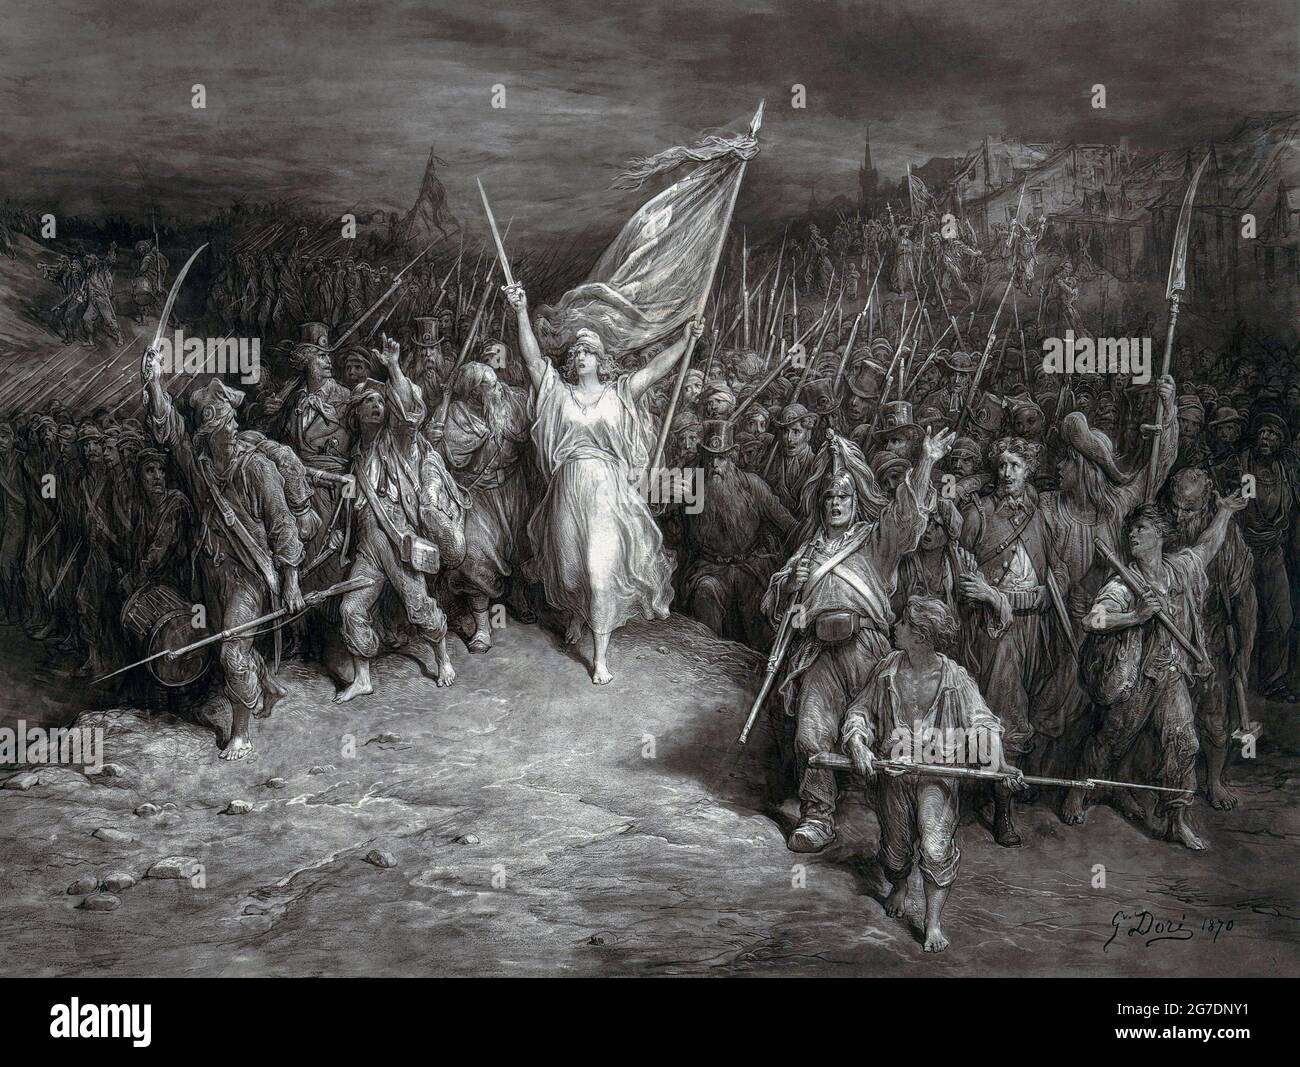 La Marseillaise, après une oeuvre de 1870 de l'artiste français Gustave Dore. L'œuvre est une représentation allégorique de l'hymne national français du même nom. Banque D'Images